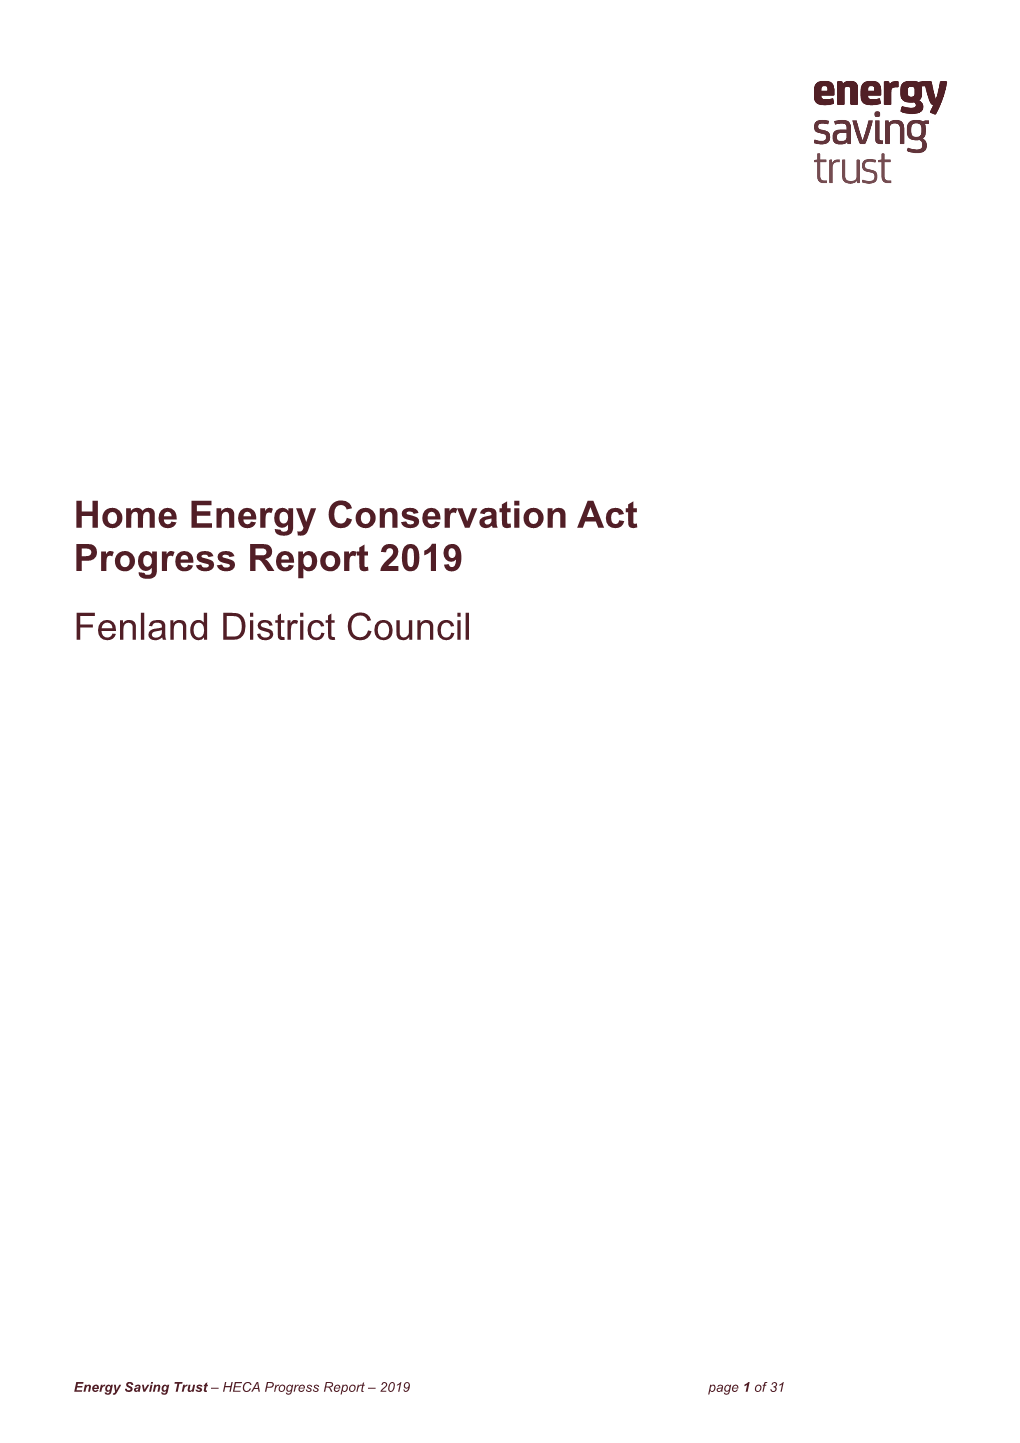 170605 HECA Progress Report 2019